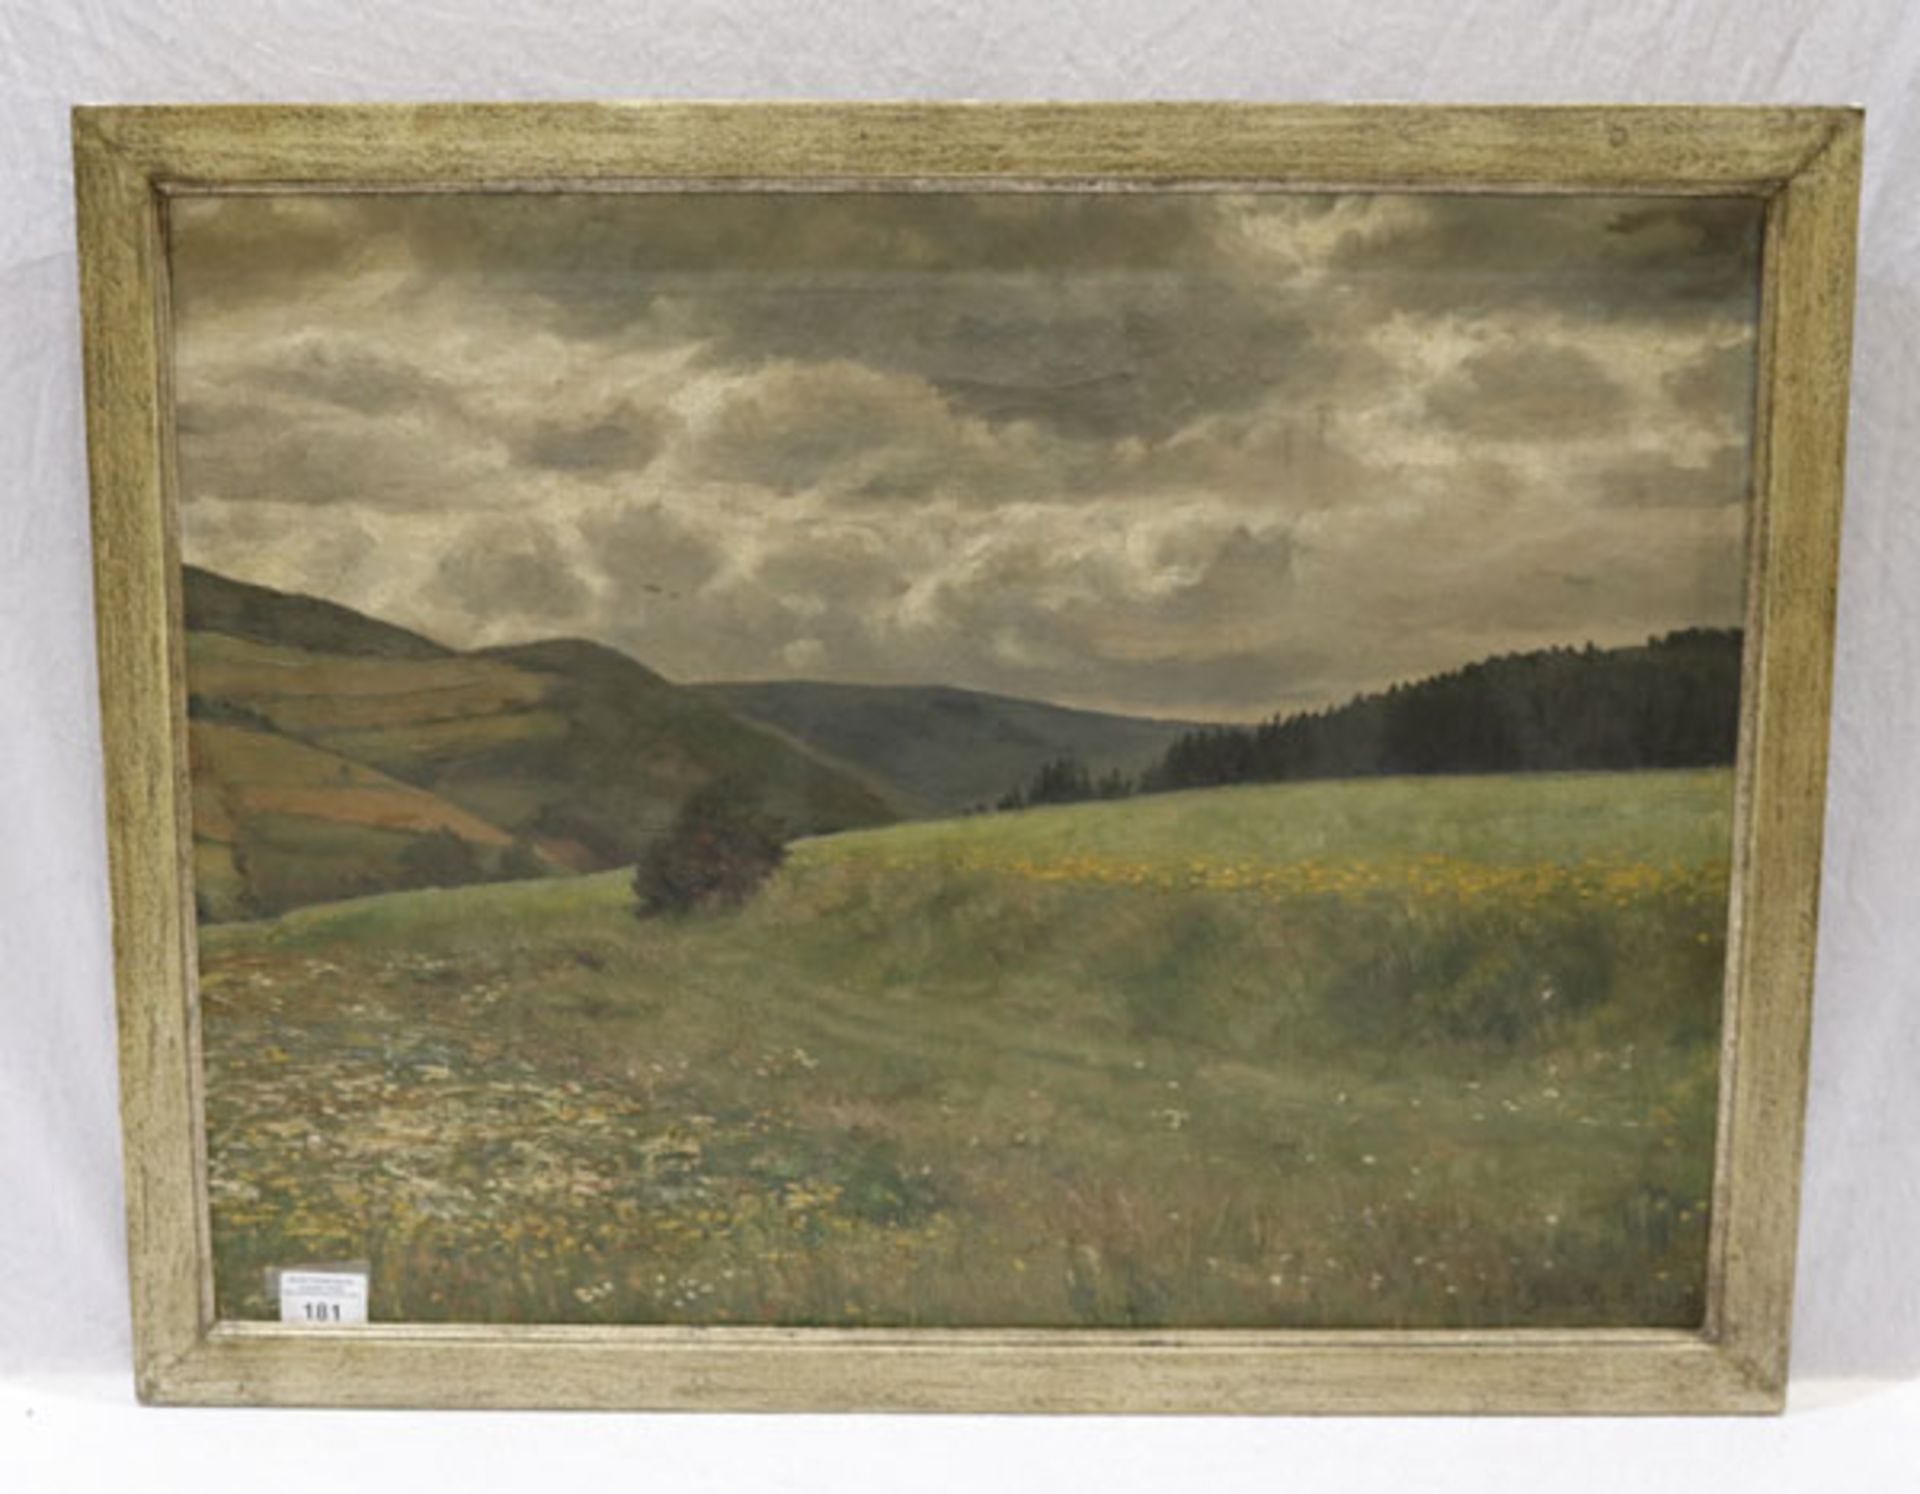 Gemälde ÖL/LW 'Landschafts-Szenerie mit Somerwiese', signiert Emil Schultz-Riga, * 1872 Dünaburg +